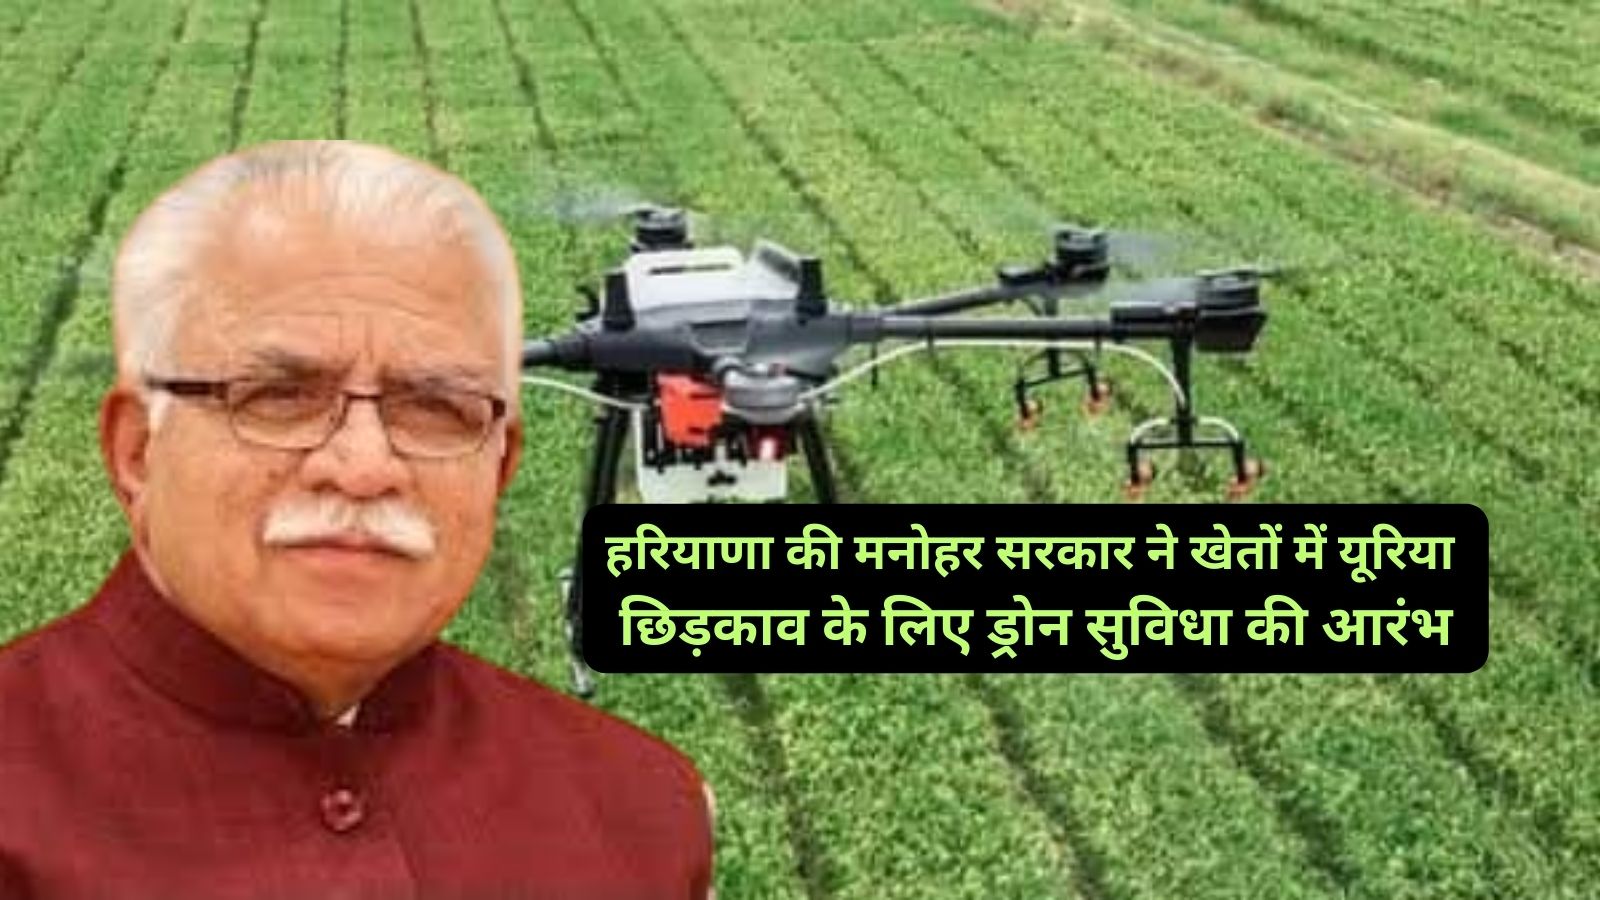 Drone Facility in Haryana:हरियाणा की मनोहर सरकार ने खेतों में यूरिया छिड़काव के लिए ड्रोन सुविधा की आरंभ,जानिए प्रति एकड़ ड्रोन से यूरिया के छिड़कावे का कितना शुल्क आएगा